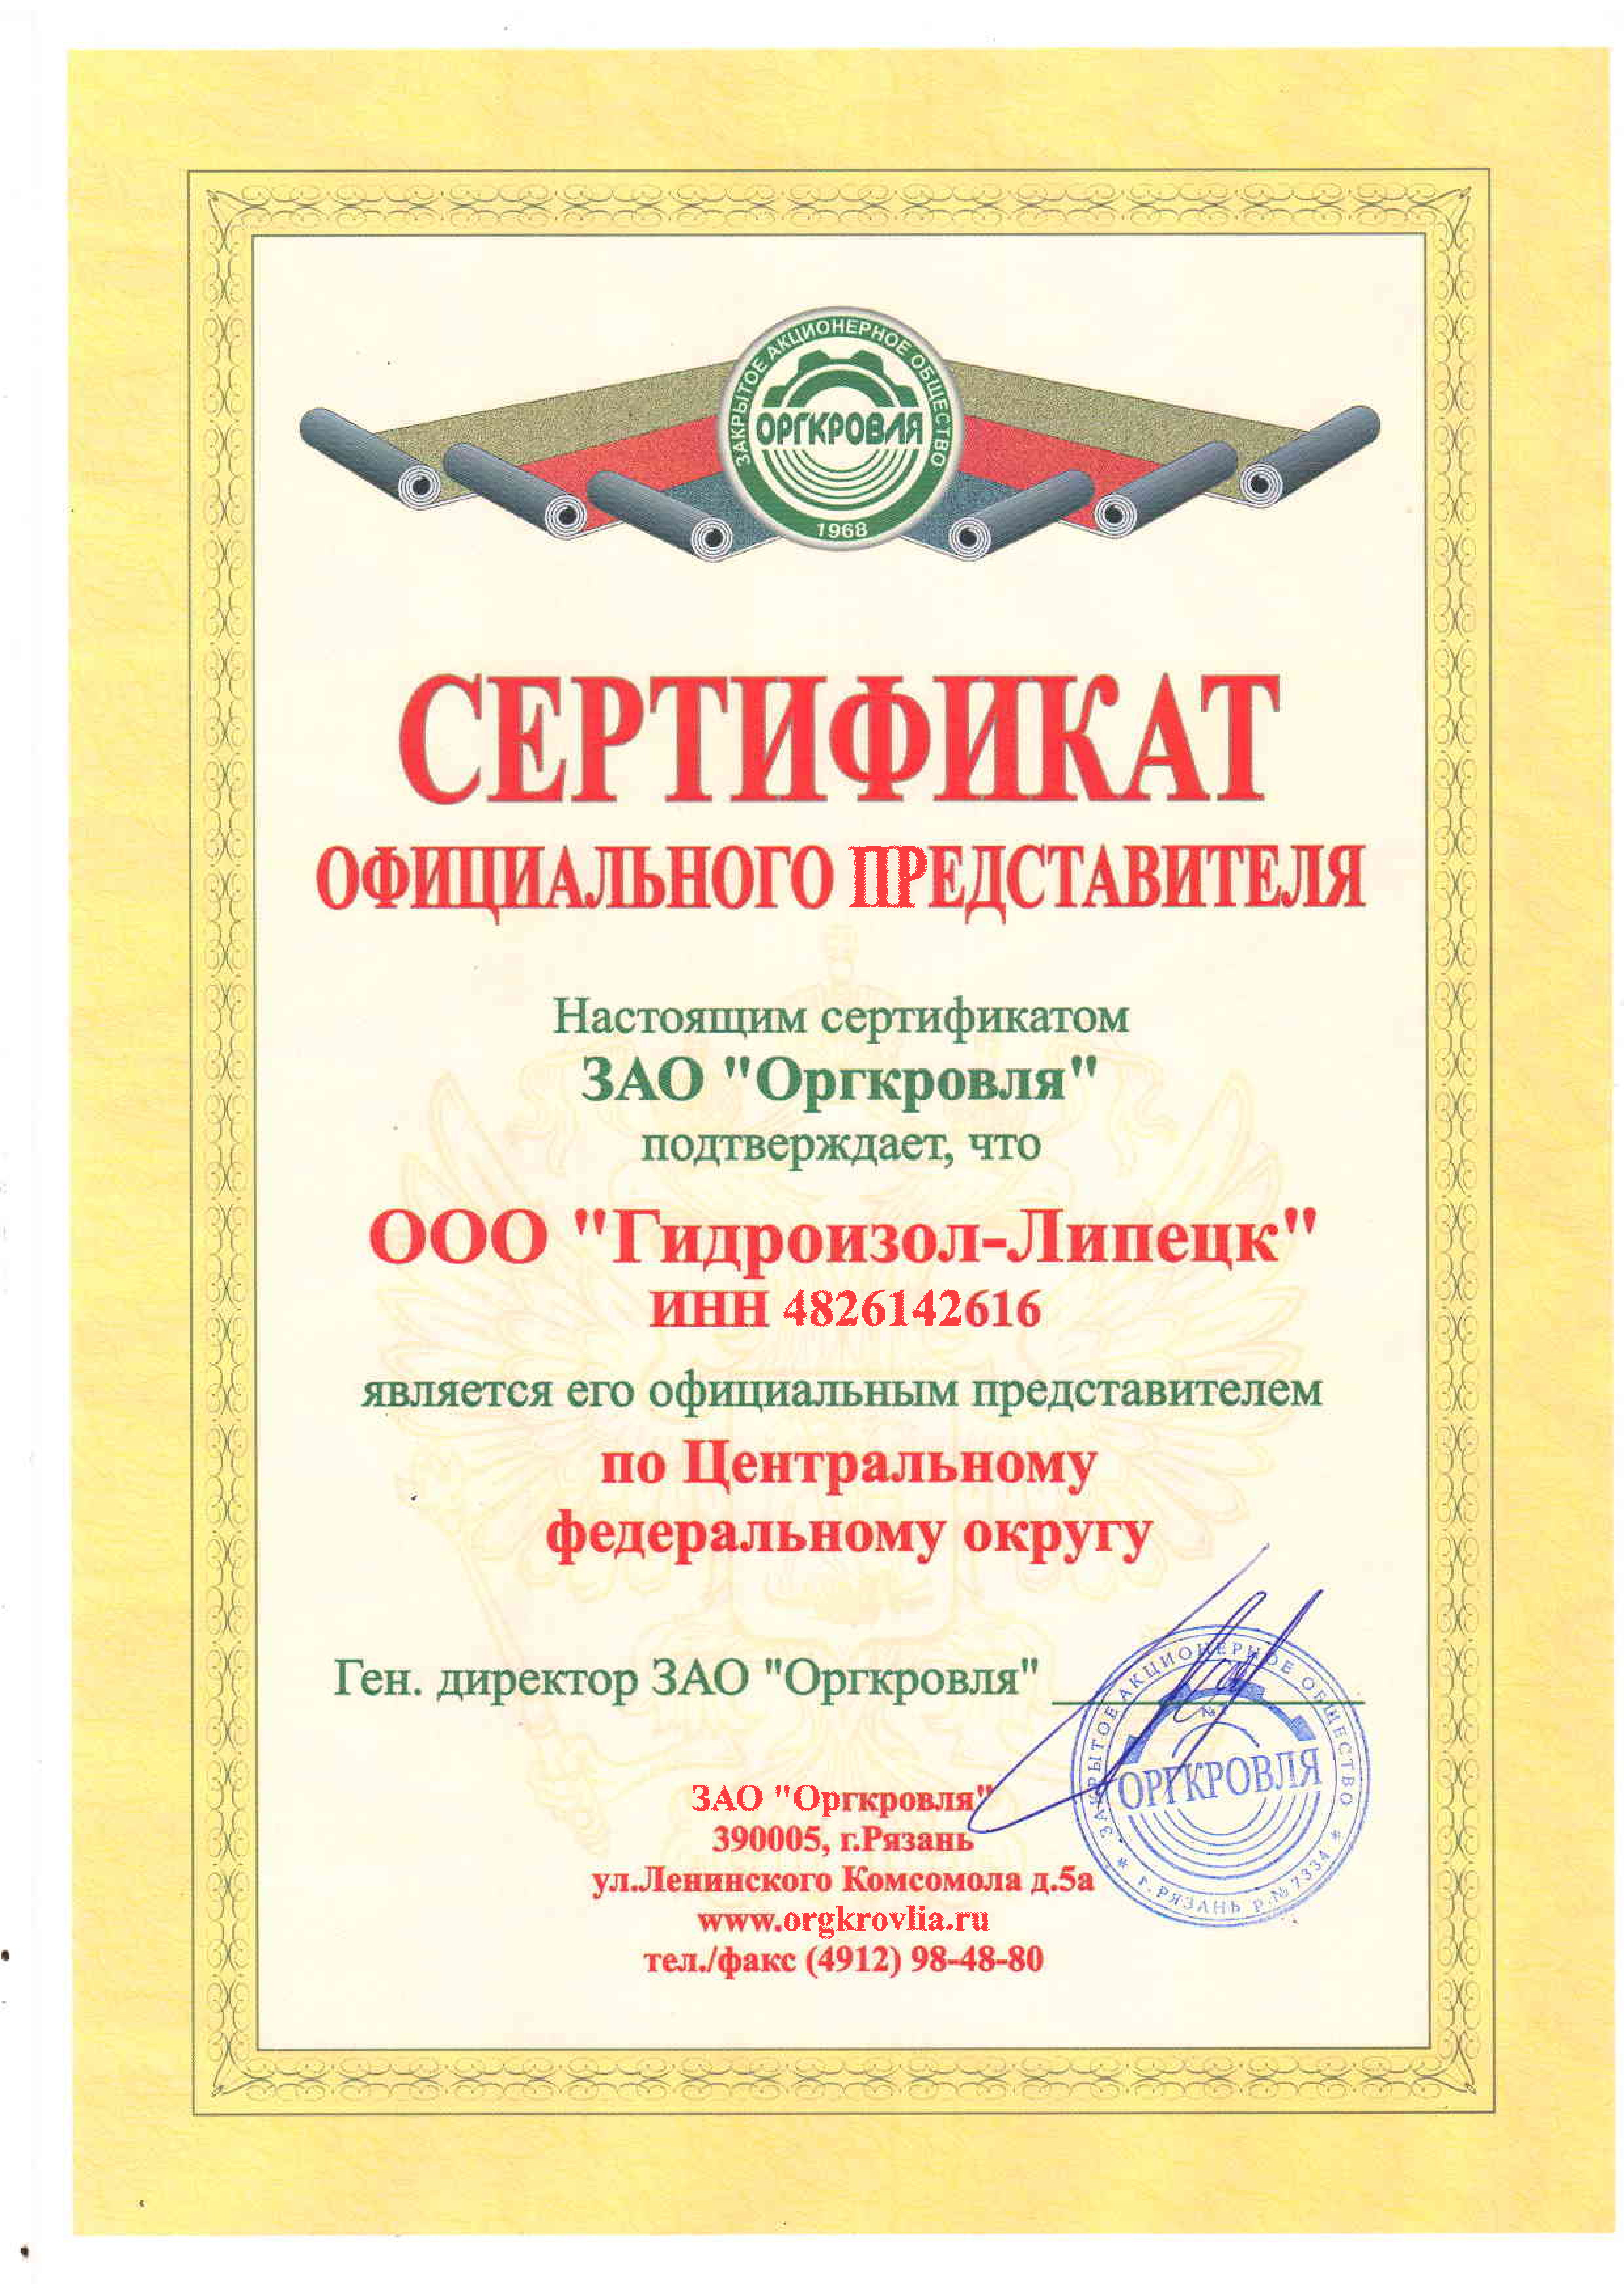 Сертификат ООО ГИДРОИЗОЛ-ЛИПЕЦК официального представителя ЗАО Оргкровля